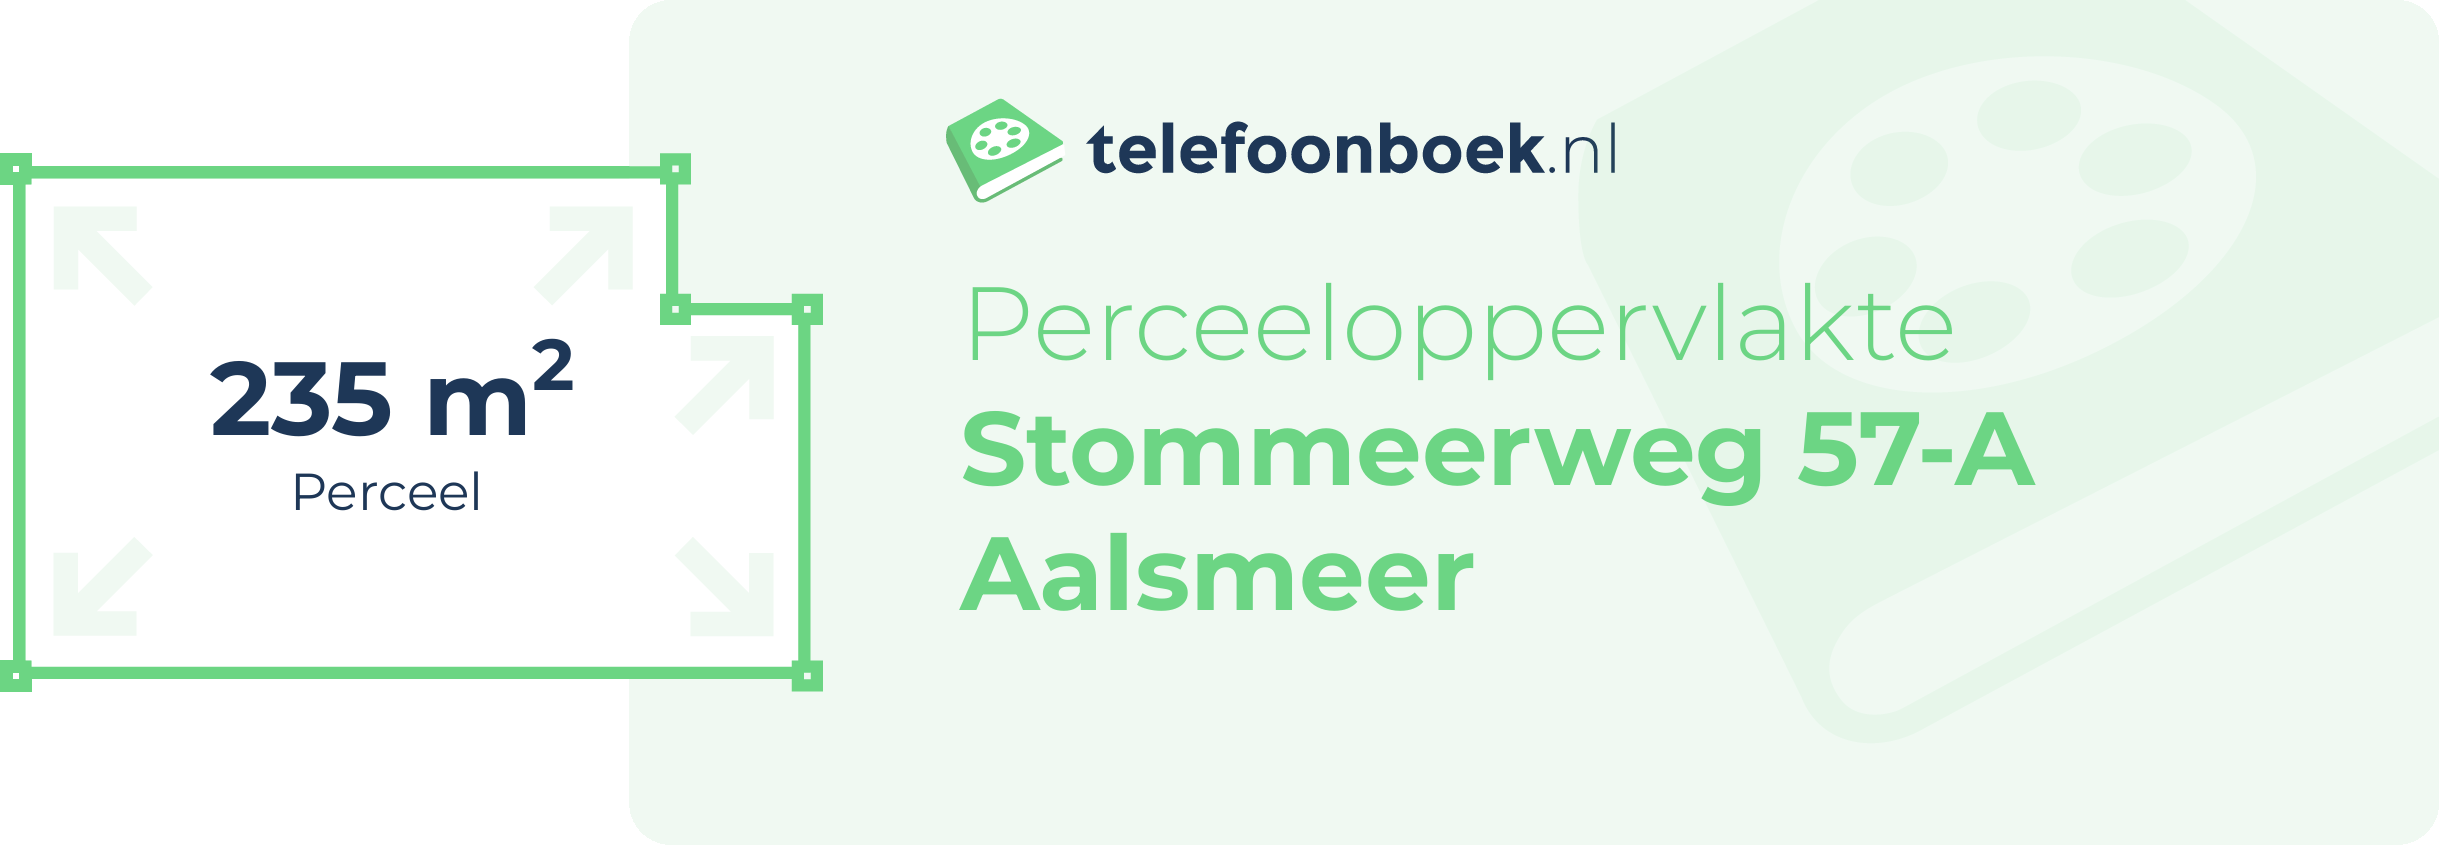 Perceeloppervlakte Stommeerweg 57-A Aalsmeer